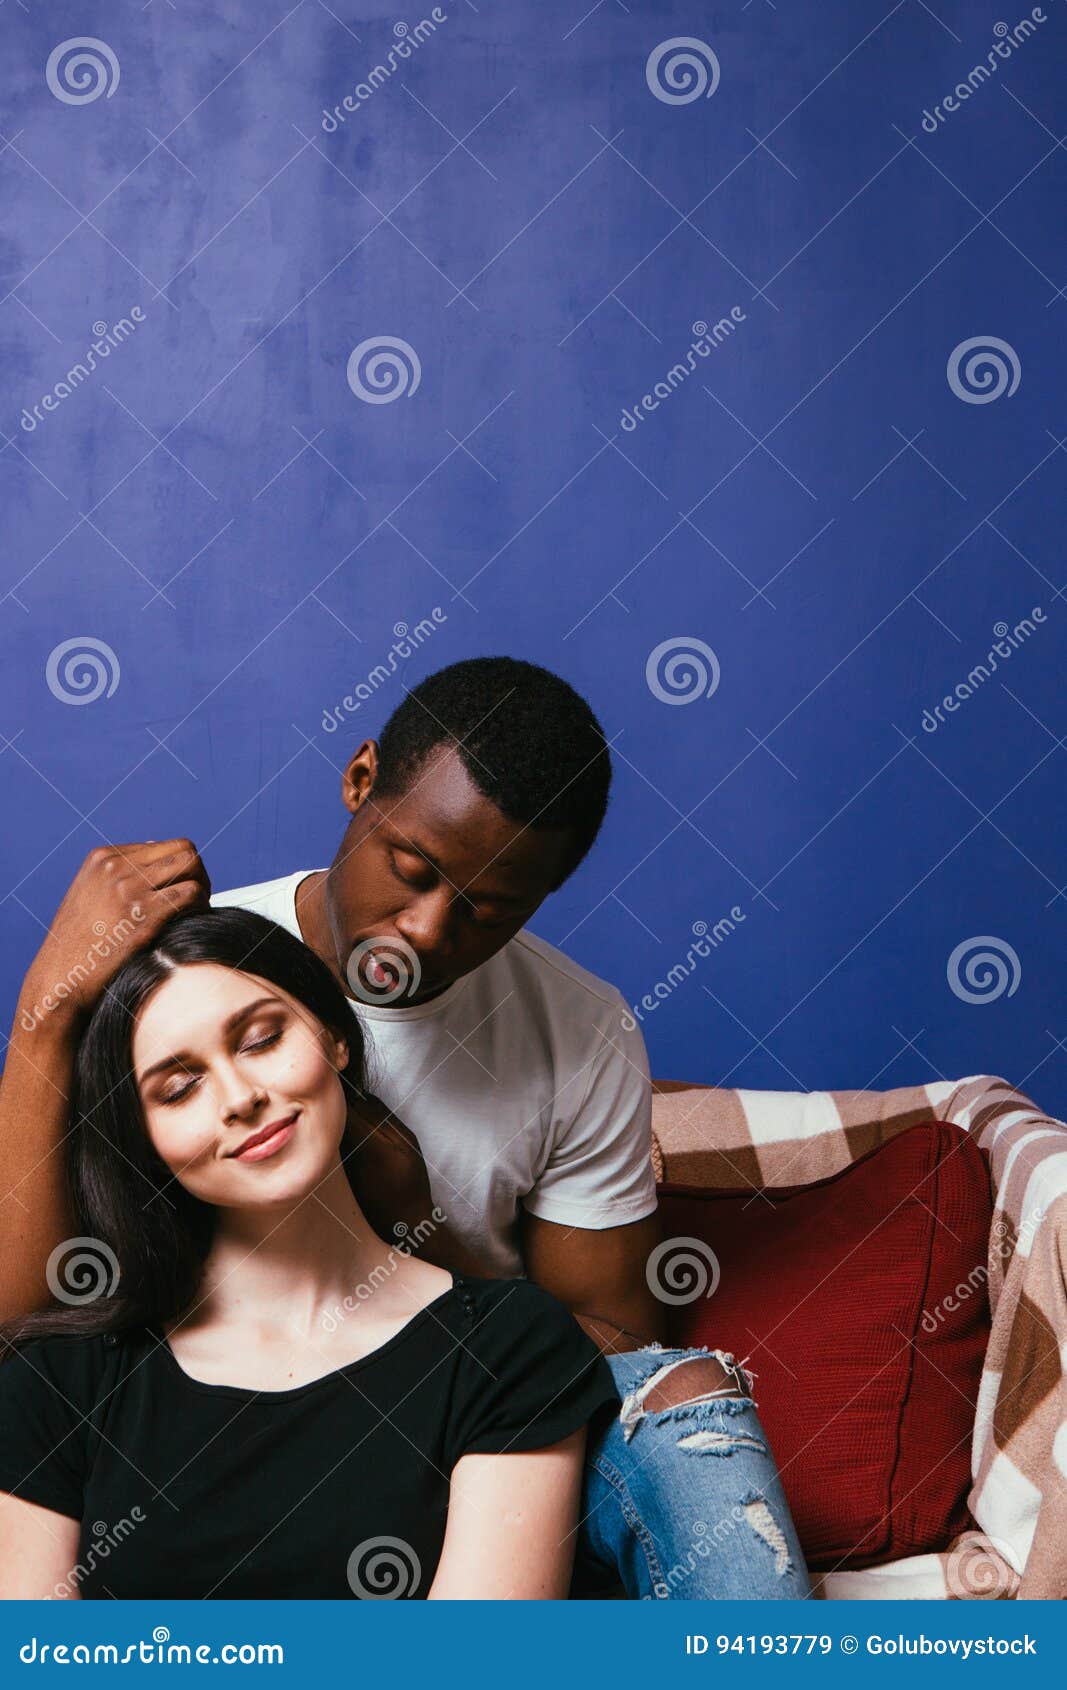 black guy white girl love porn scene picture